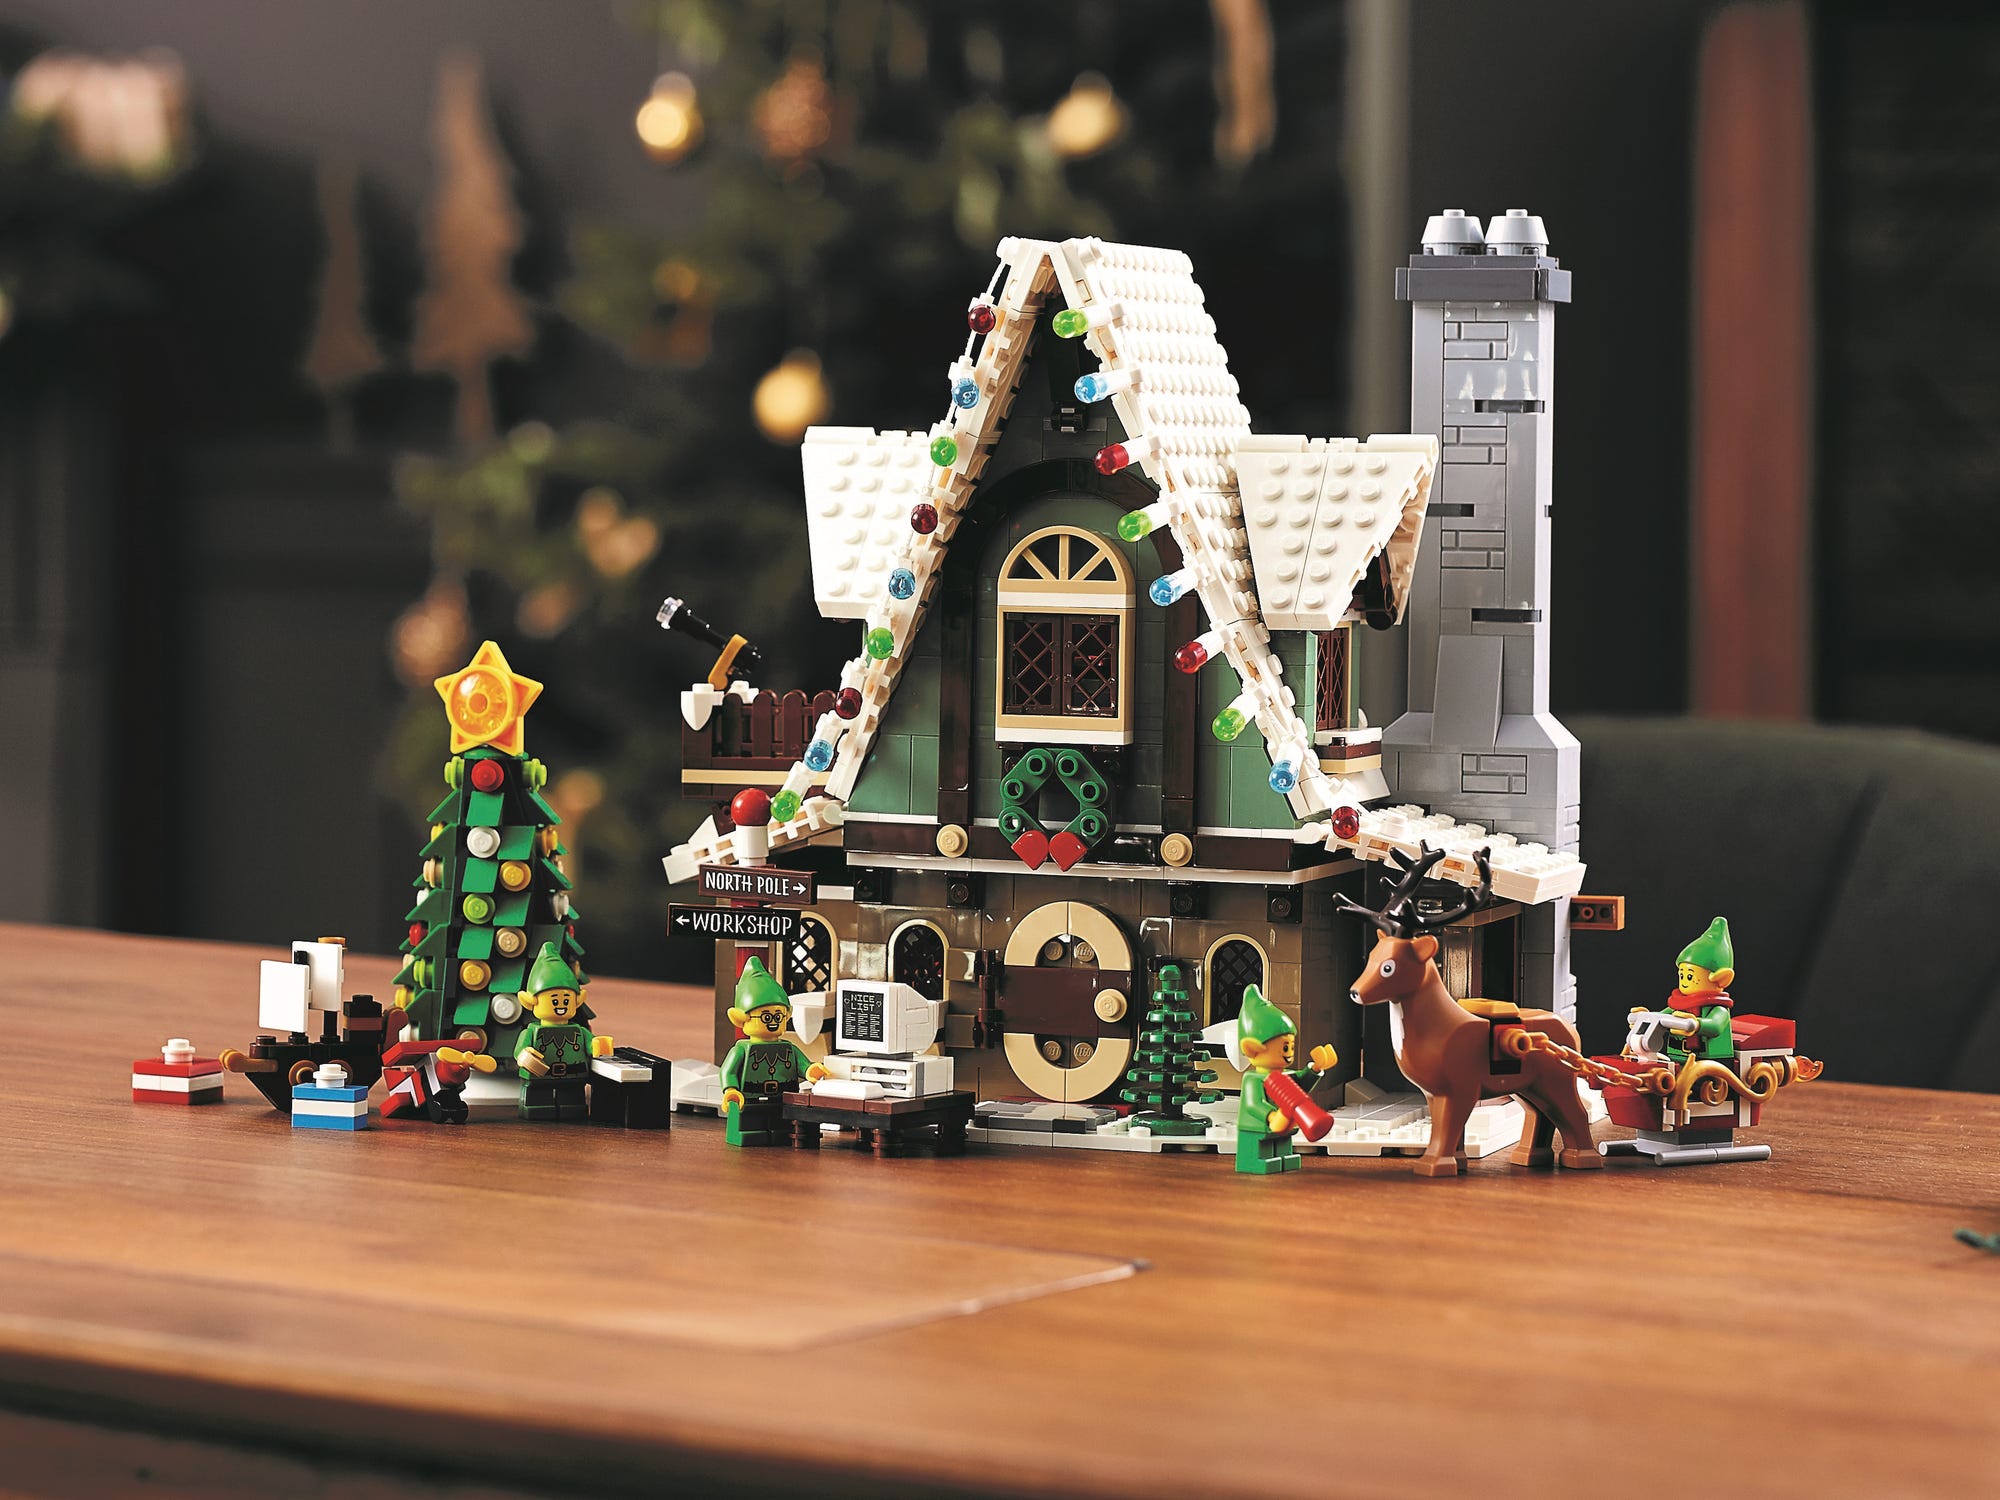 Koninklijke familie Tekstschrijver gevogelte LEGO Winter Village 10275 Elf Club House kopen? Alles wat je moet weten ·  BrickTastic